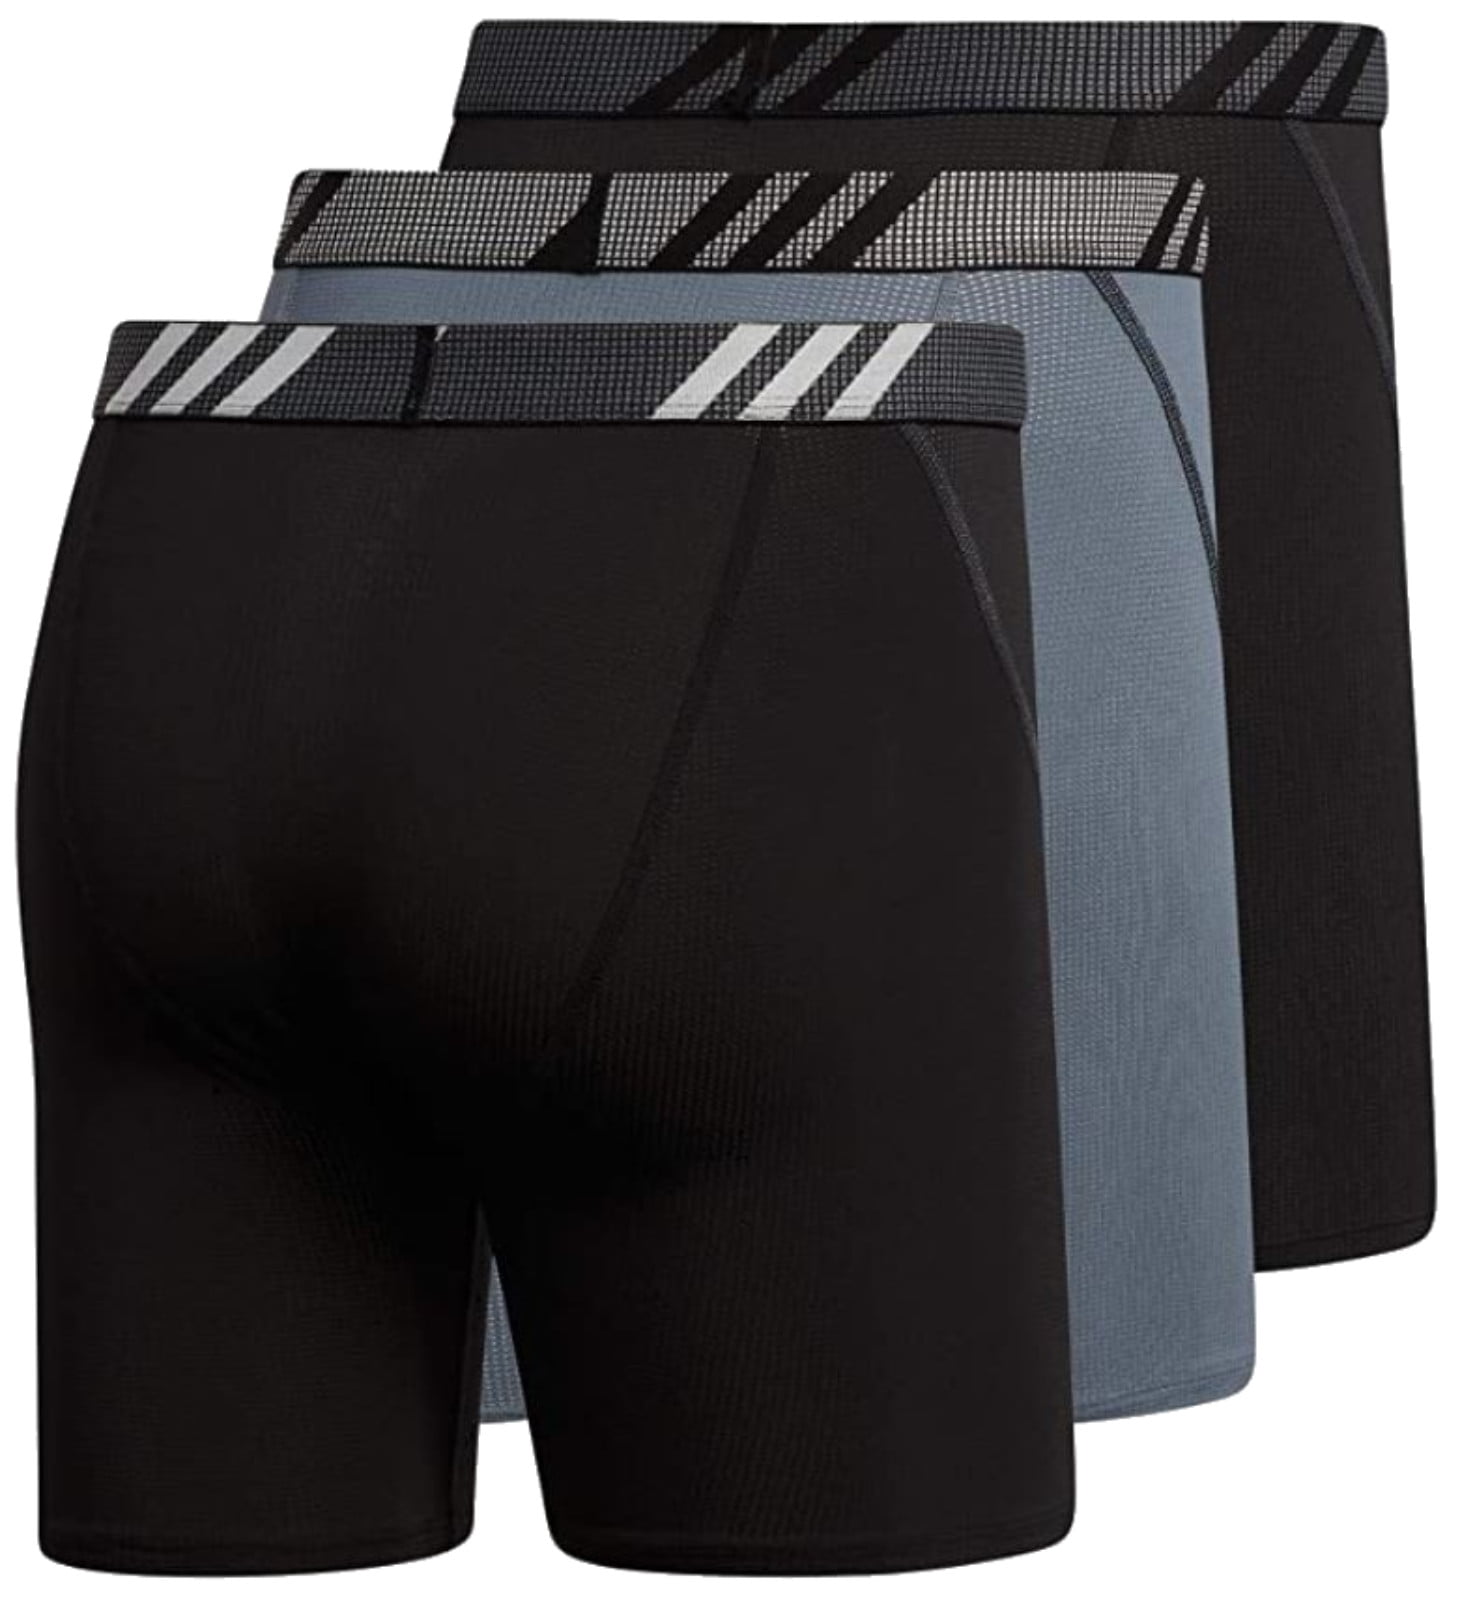 Adidas Men's Stretch Cotton Boxer Brief Tagless Underwear (3-Pack) - Black  